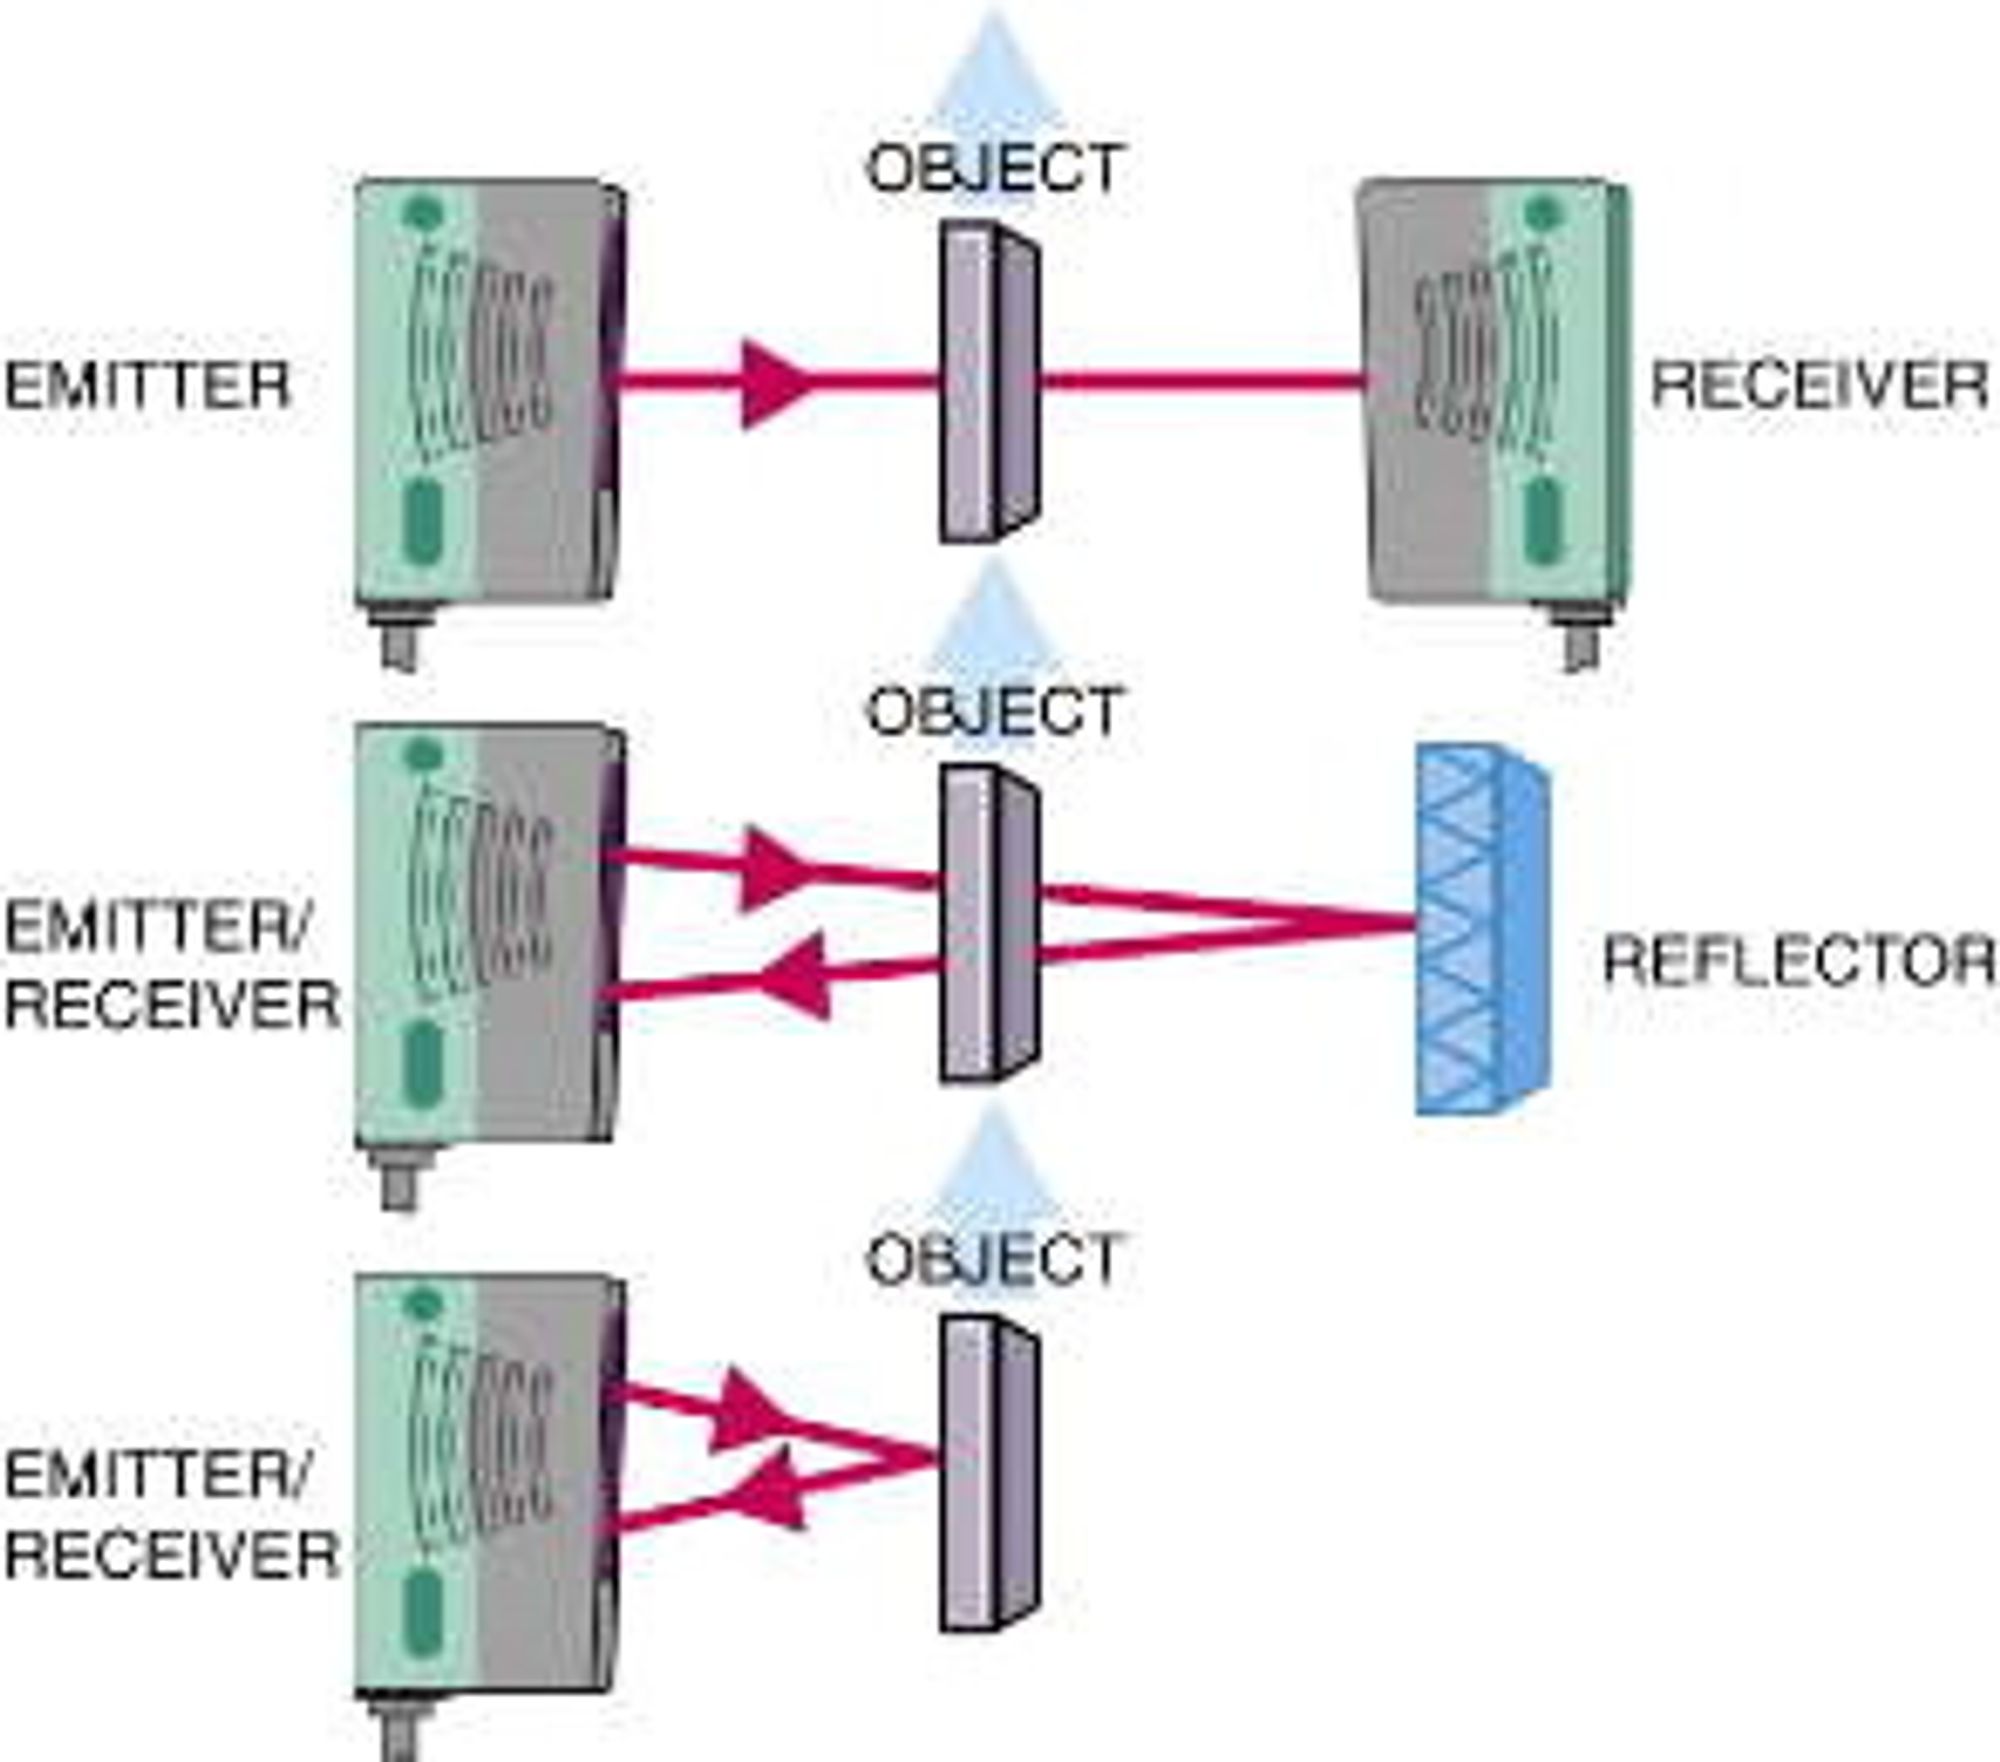 Det er 3 hovedtyper fotoceller, separat sender/ mottager (topp), kombinert sender/mottager med reflektor (midten) og kombinert sender/mottager som bruker objektet for refleksjon (nederst).